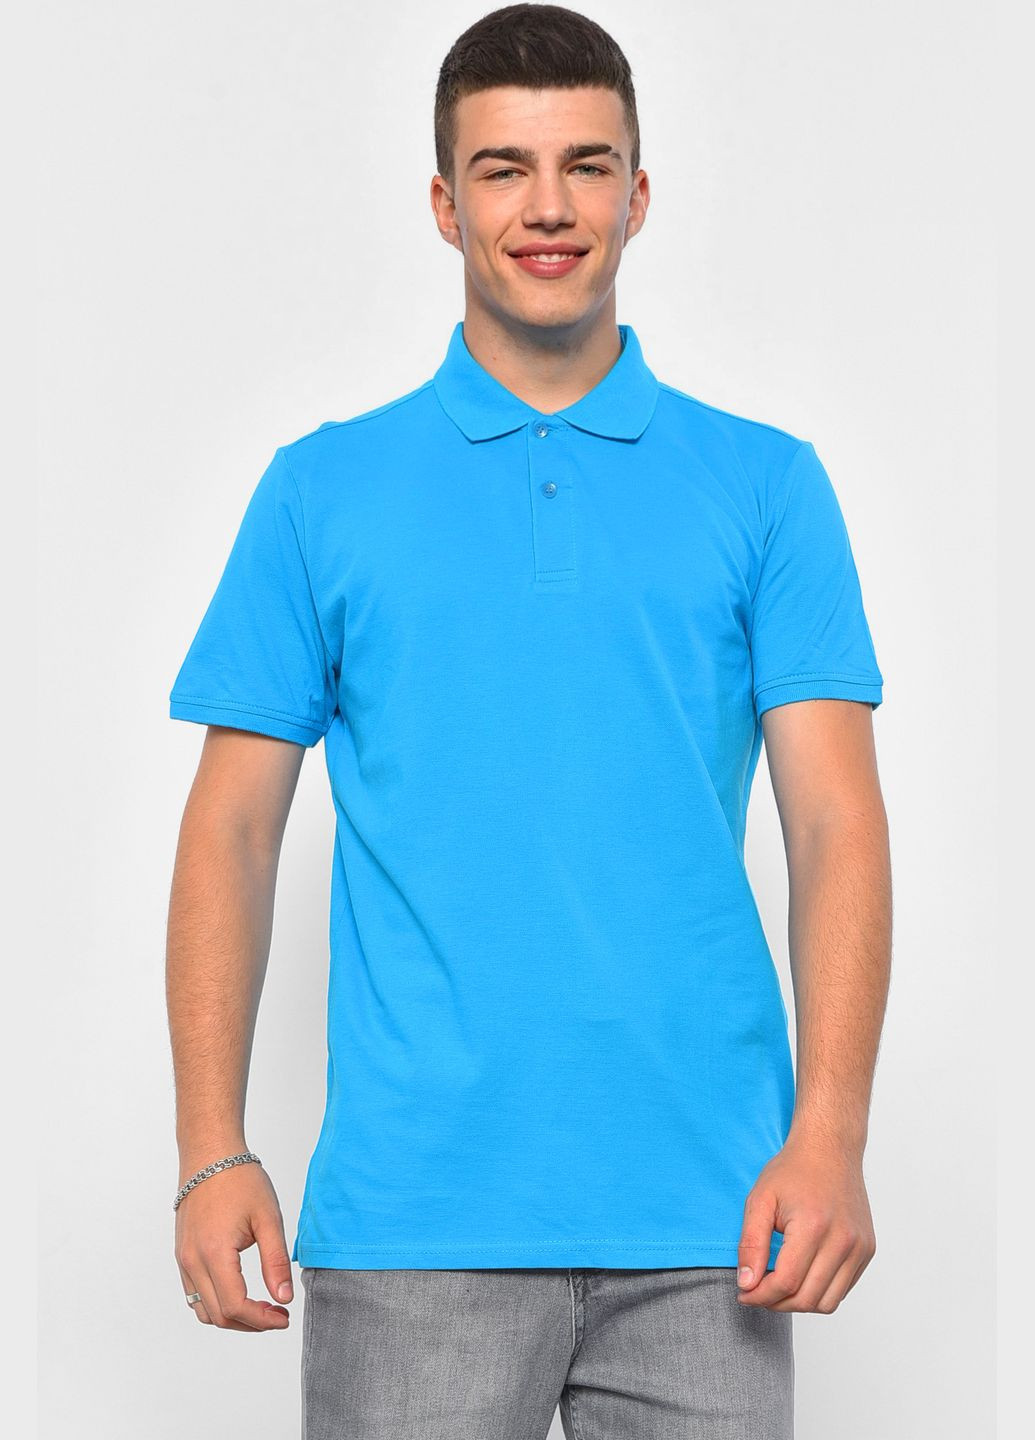 Бирюзовая футболка поло мужская бирюзового цвета Let's Shop